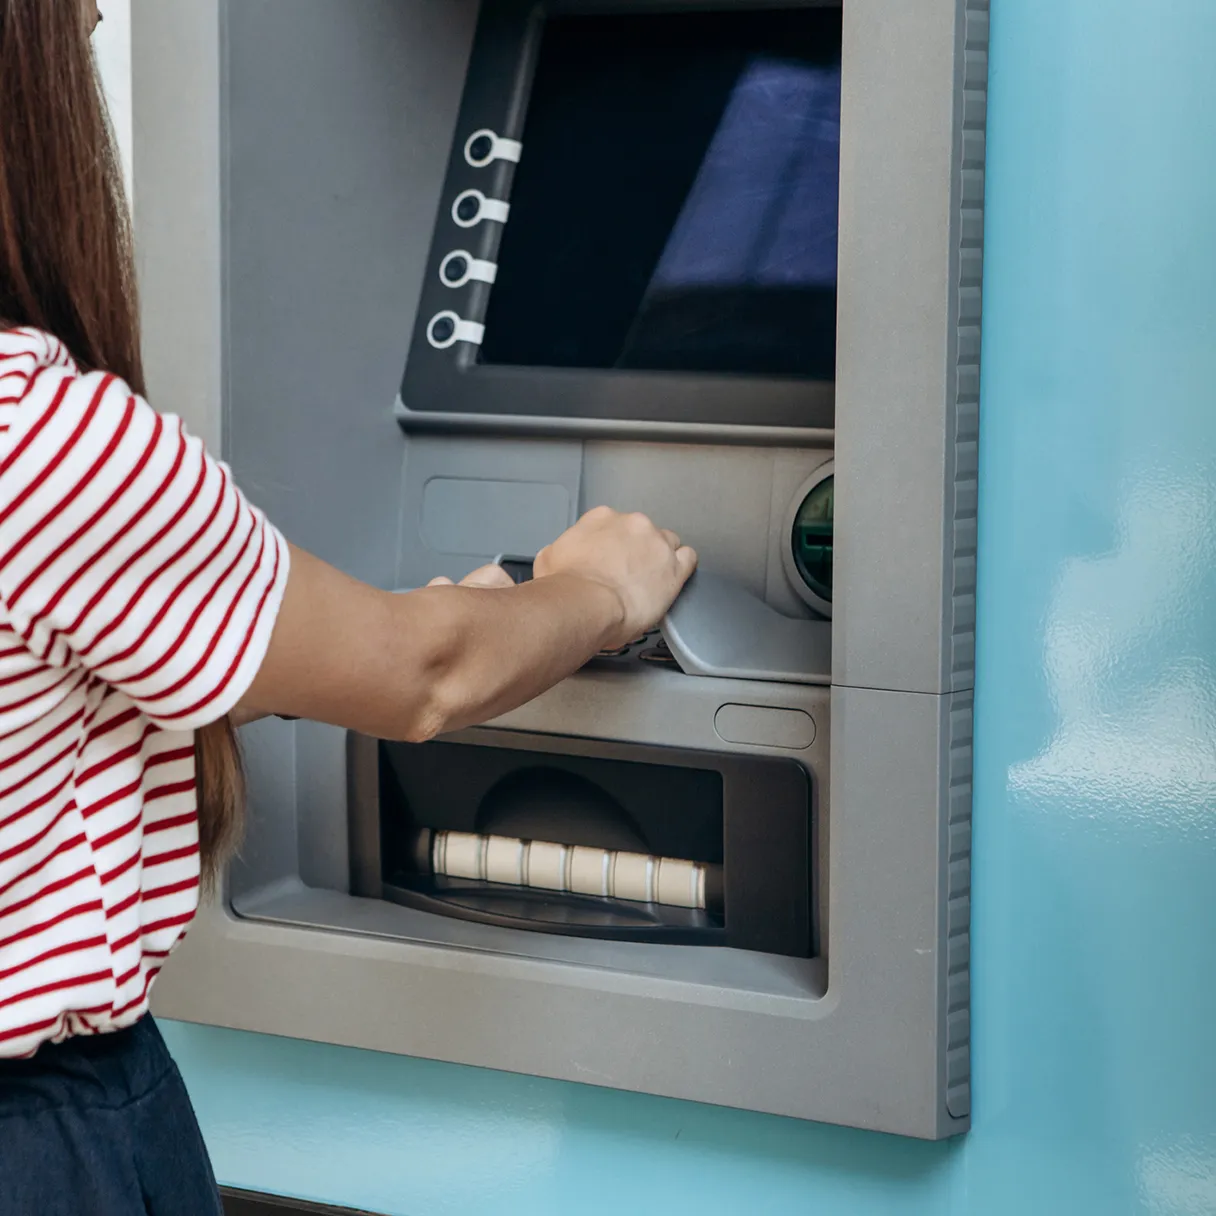 Frau hebt Geld an einem Geldautomaten ab.